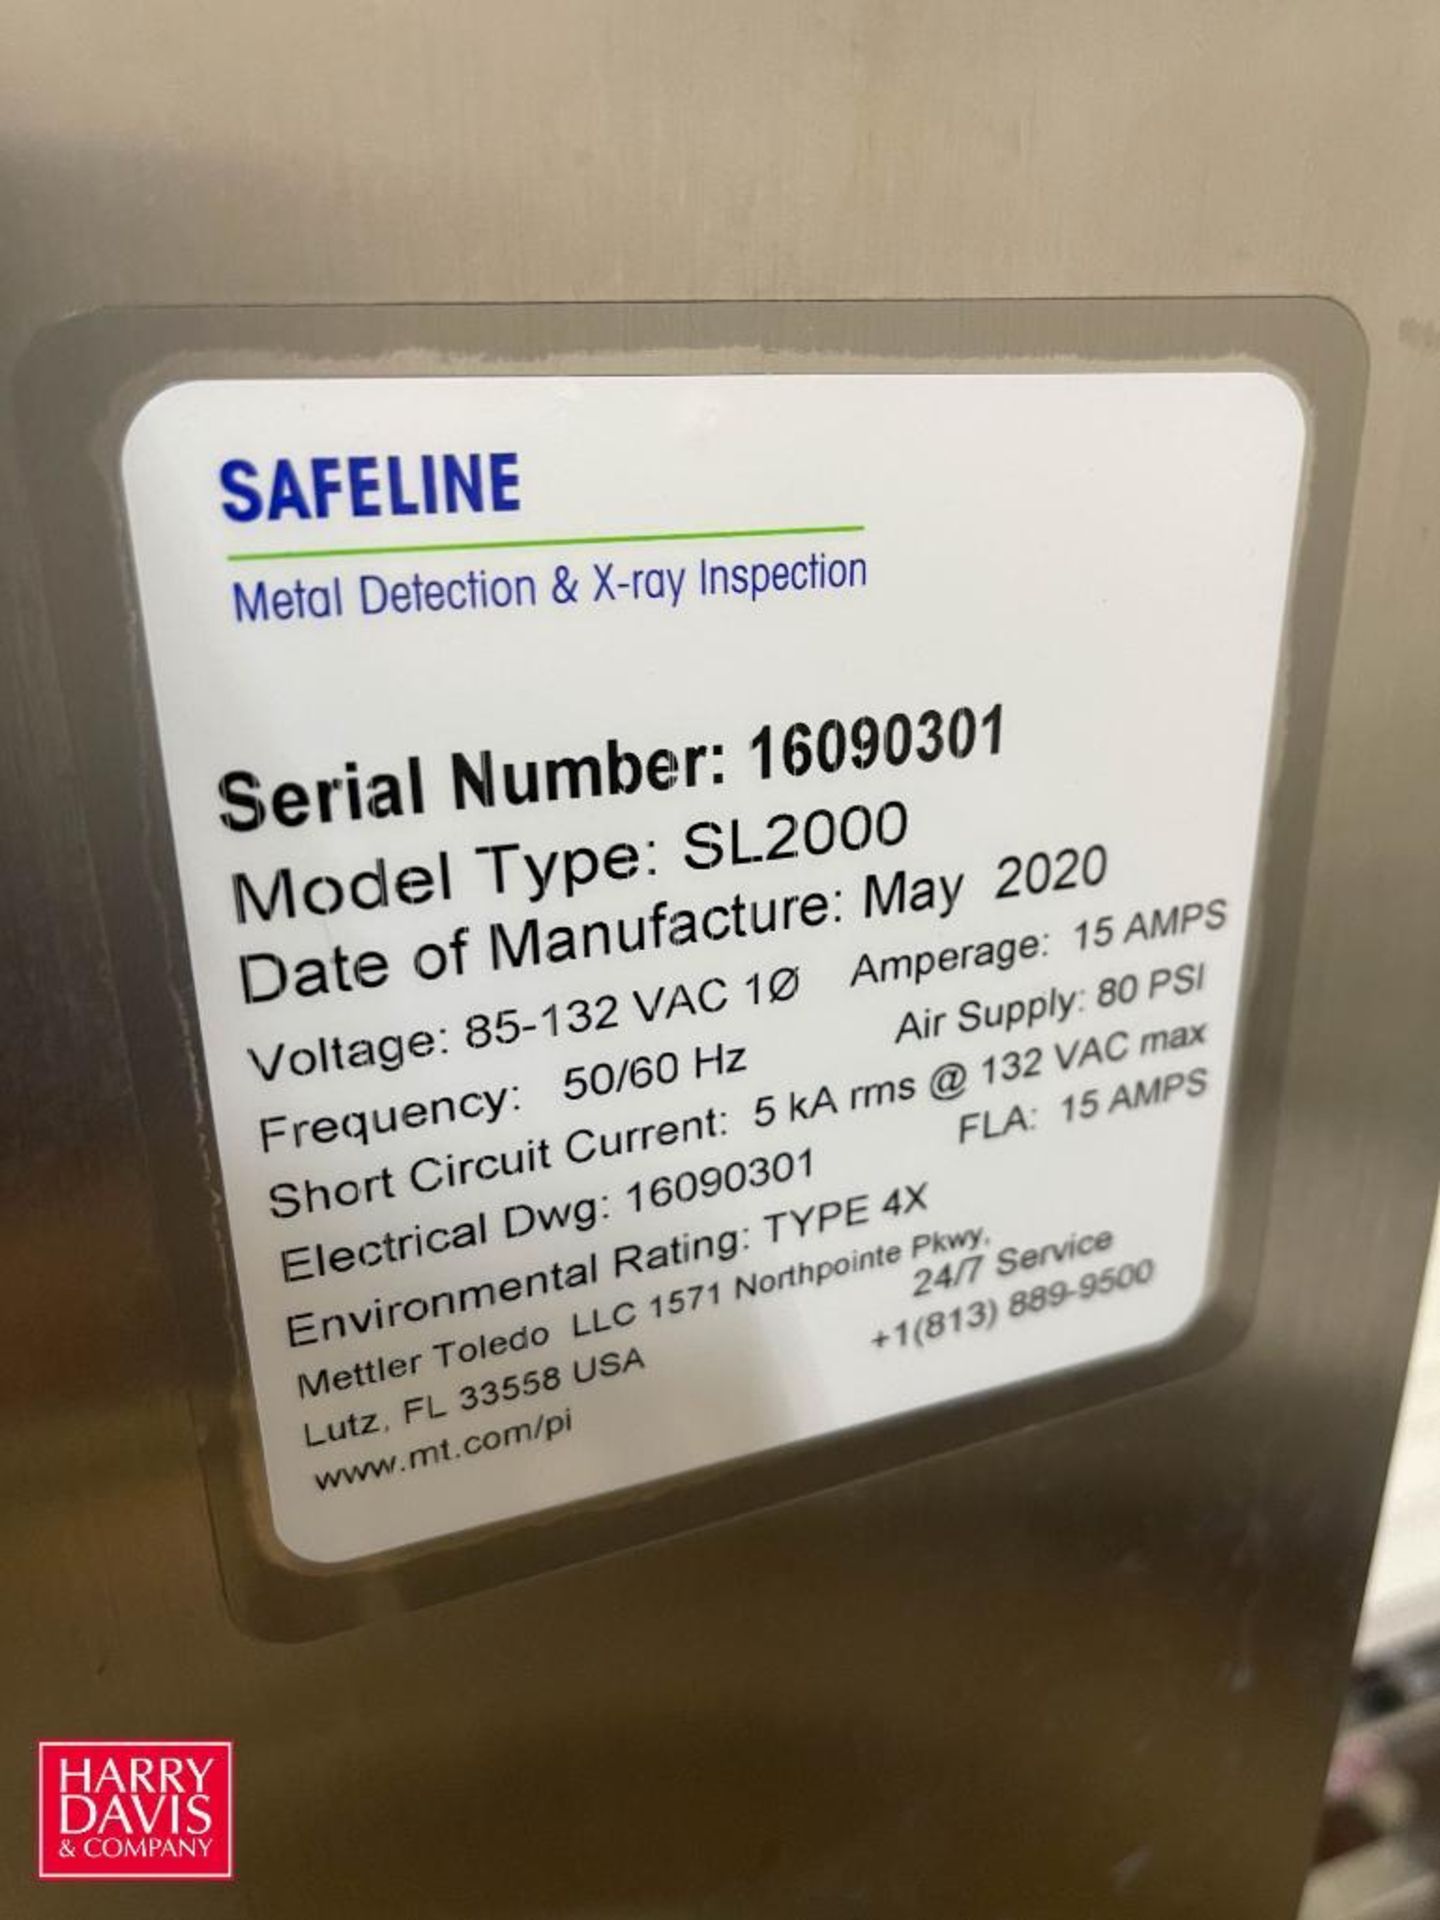 NEVER USED 2020 Safeline Metal Detector, Model: SL2000, S/N: 16090301 - Rigging Fee: $250 - Image 2 of 2